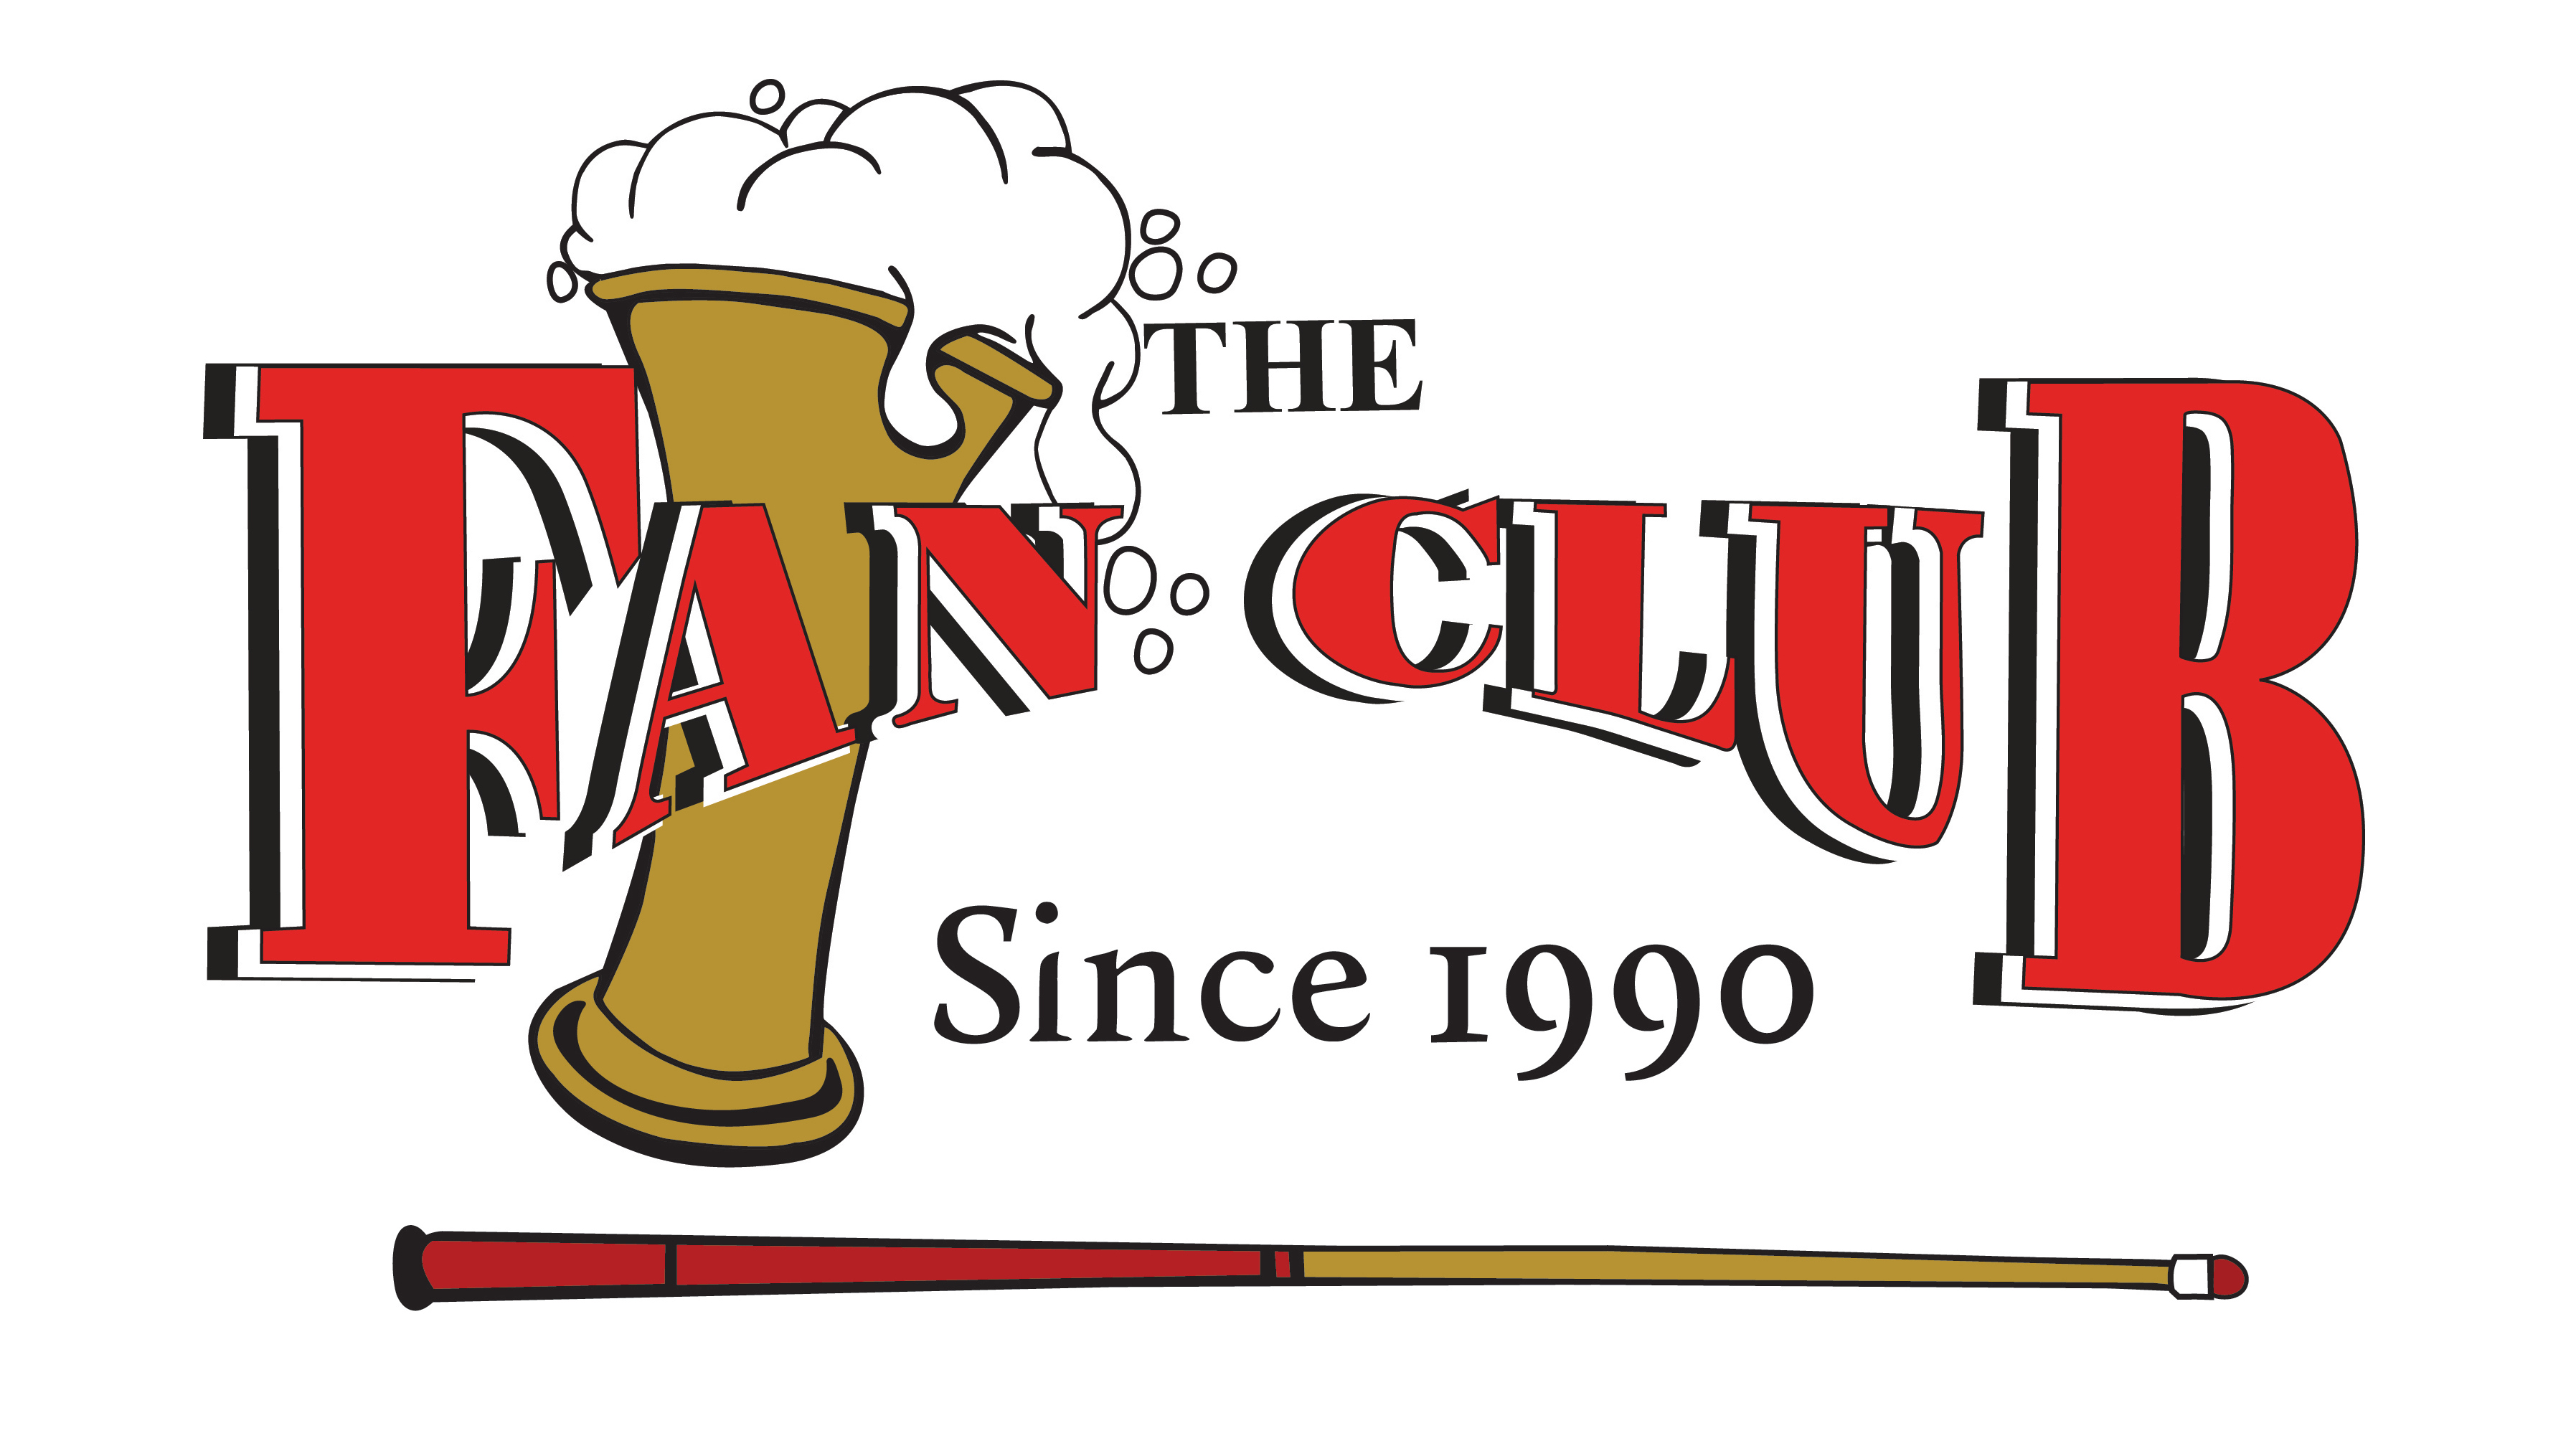 The Fan Club Wareham MA